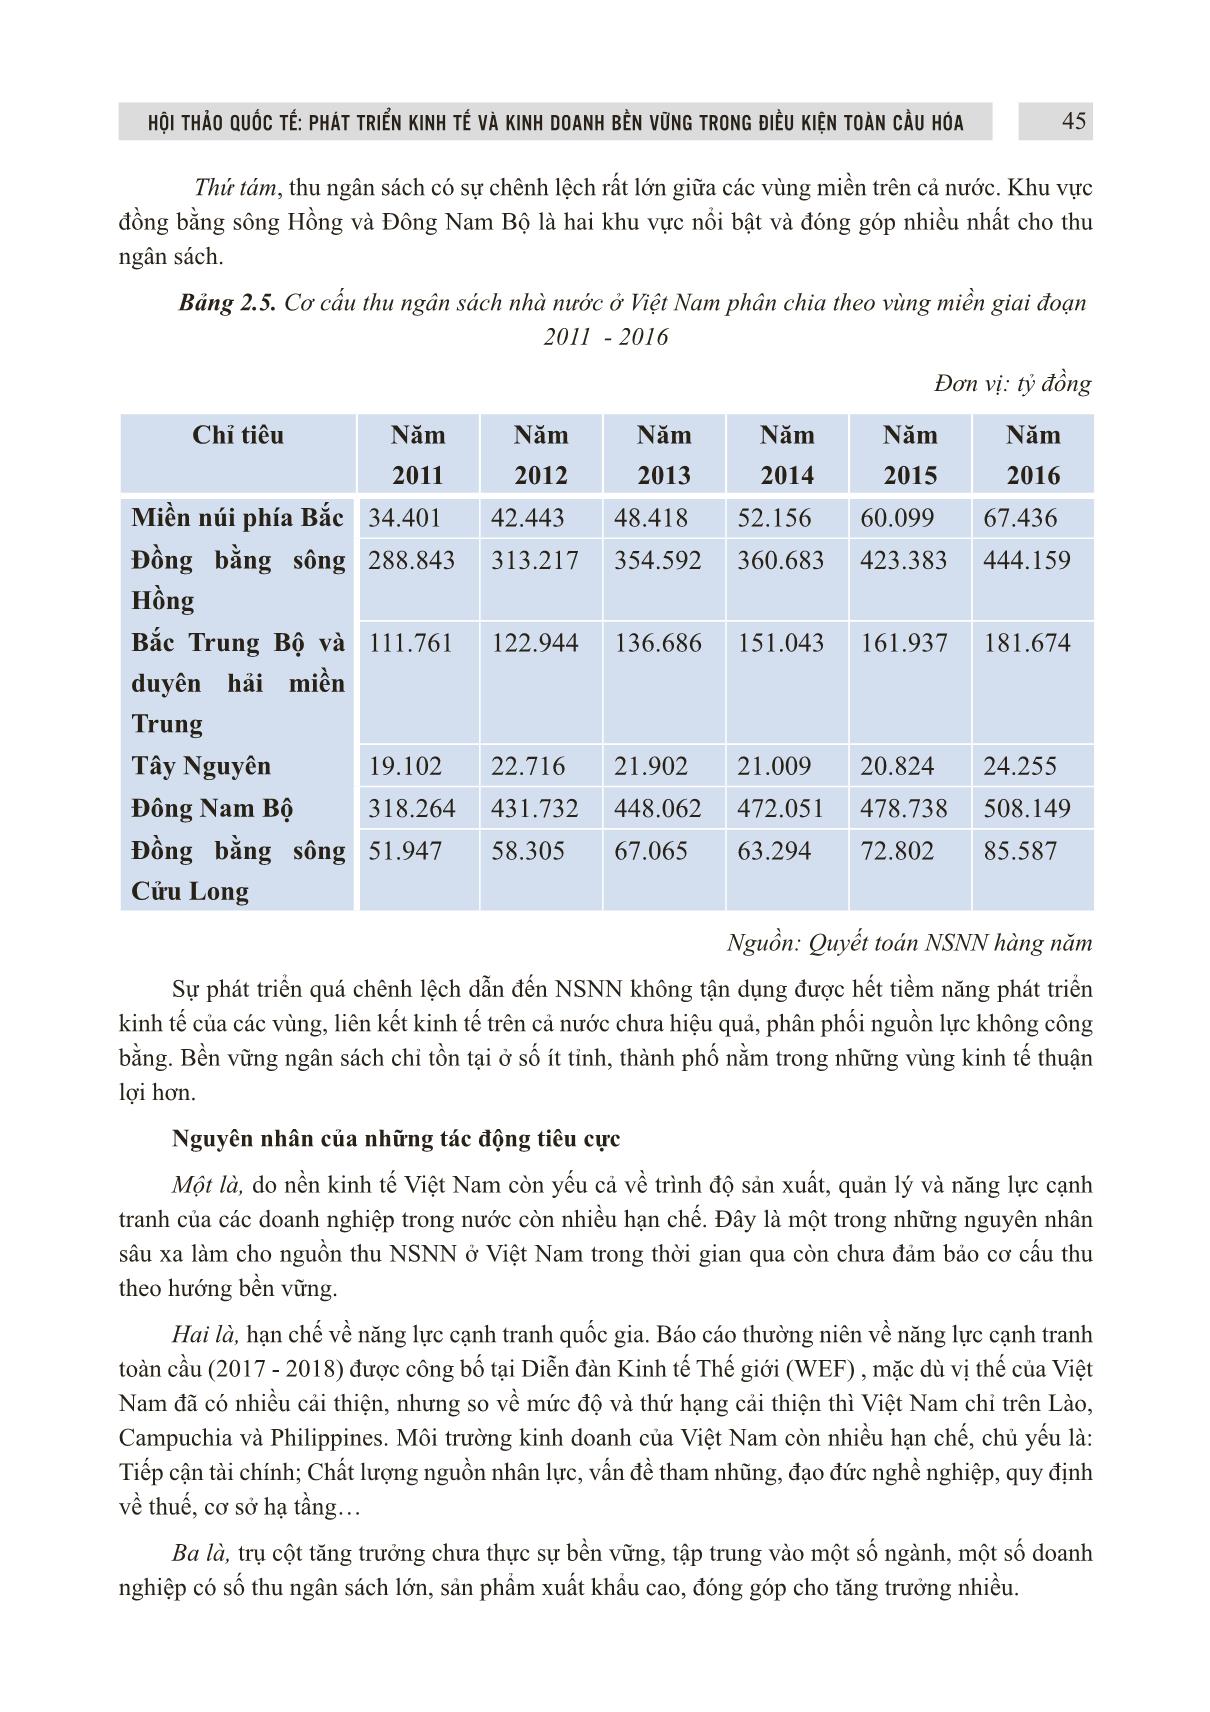 Đổi mới cơ cấu thu ngân sách nhà nước ở Việt Nam theo hướng bền vững trang 7